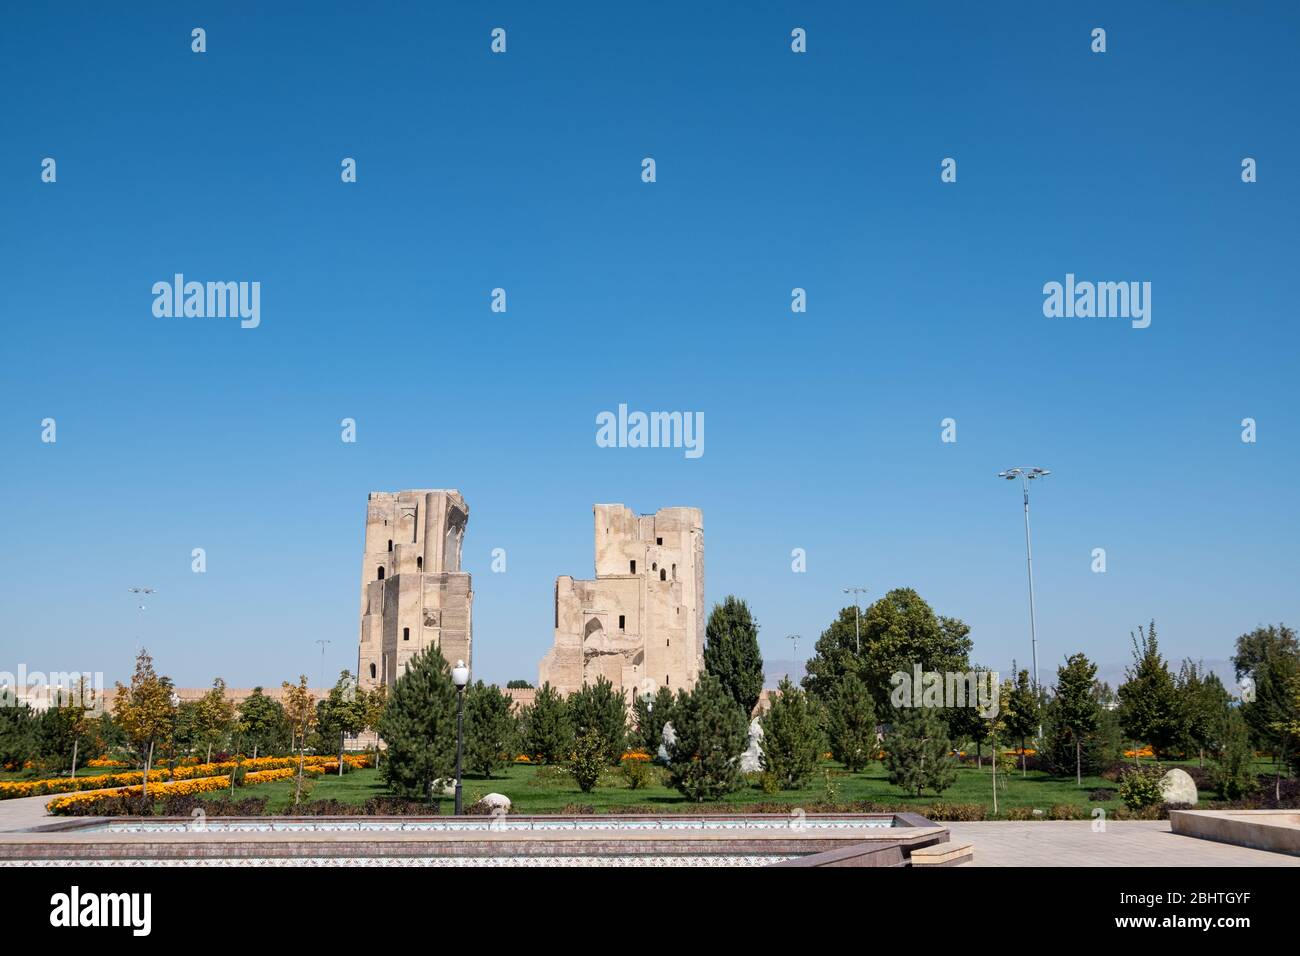 AK-Saray Palace, Shahrisabz, Uzbekistan Foto Stock